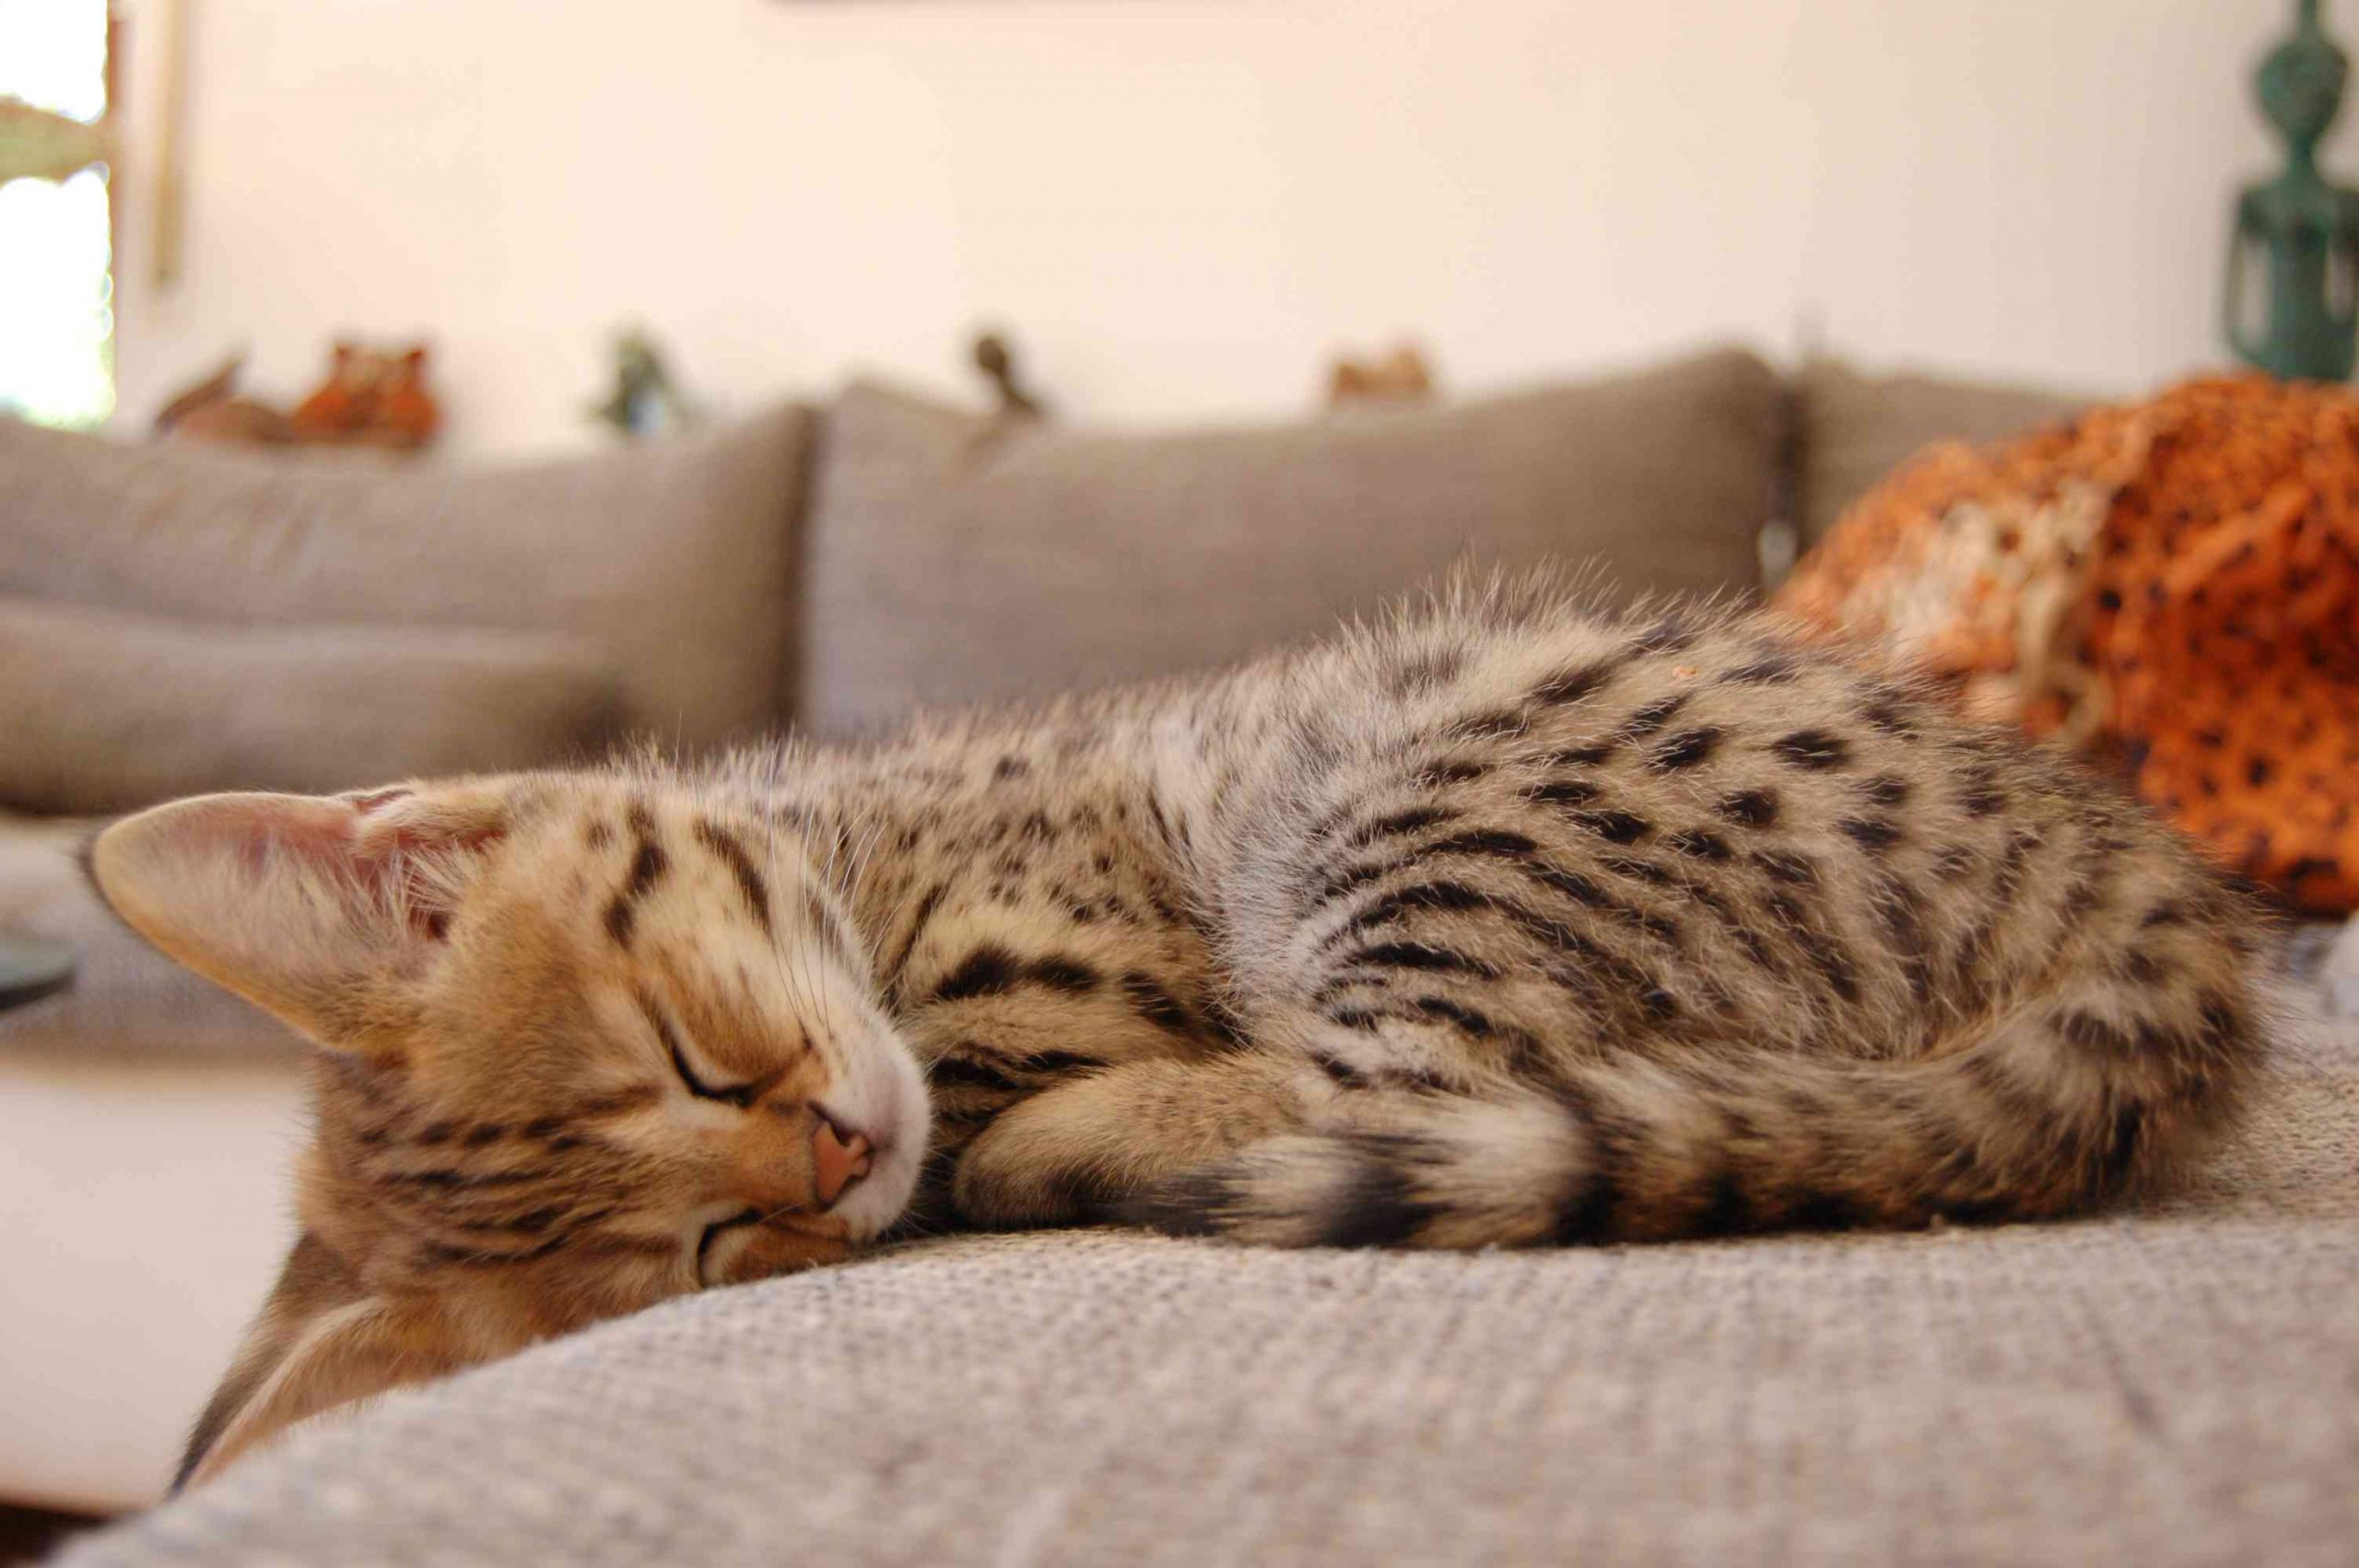 Gato Savannah durmiendo en el sofá mostrando su pelaje manchado y sus grandes orejas